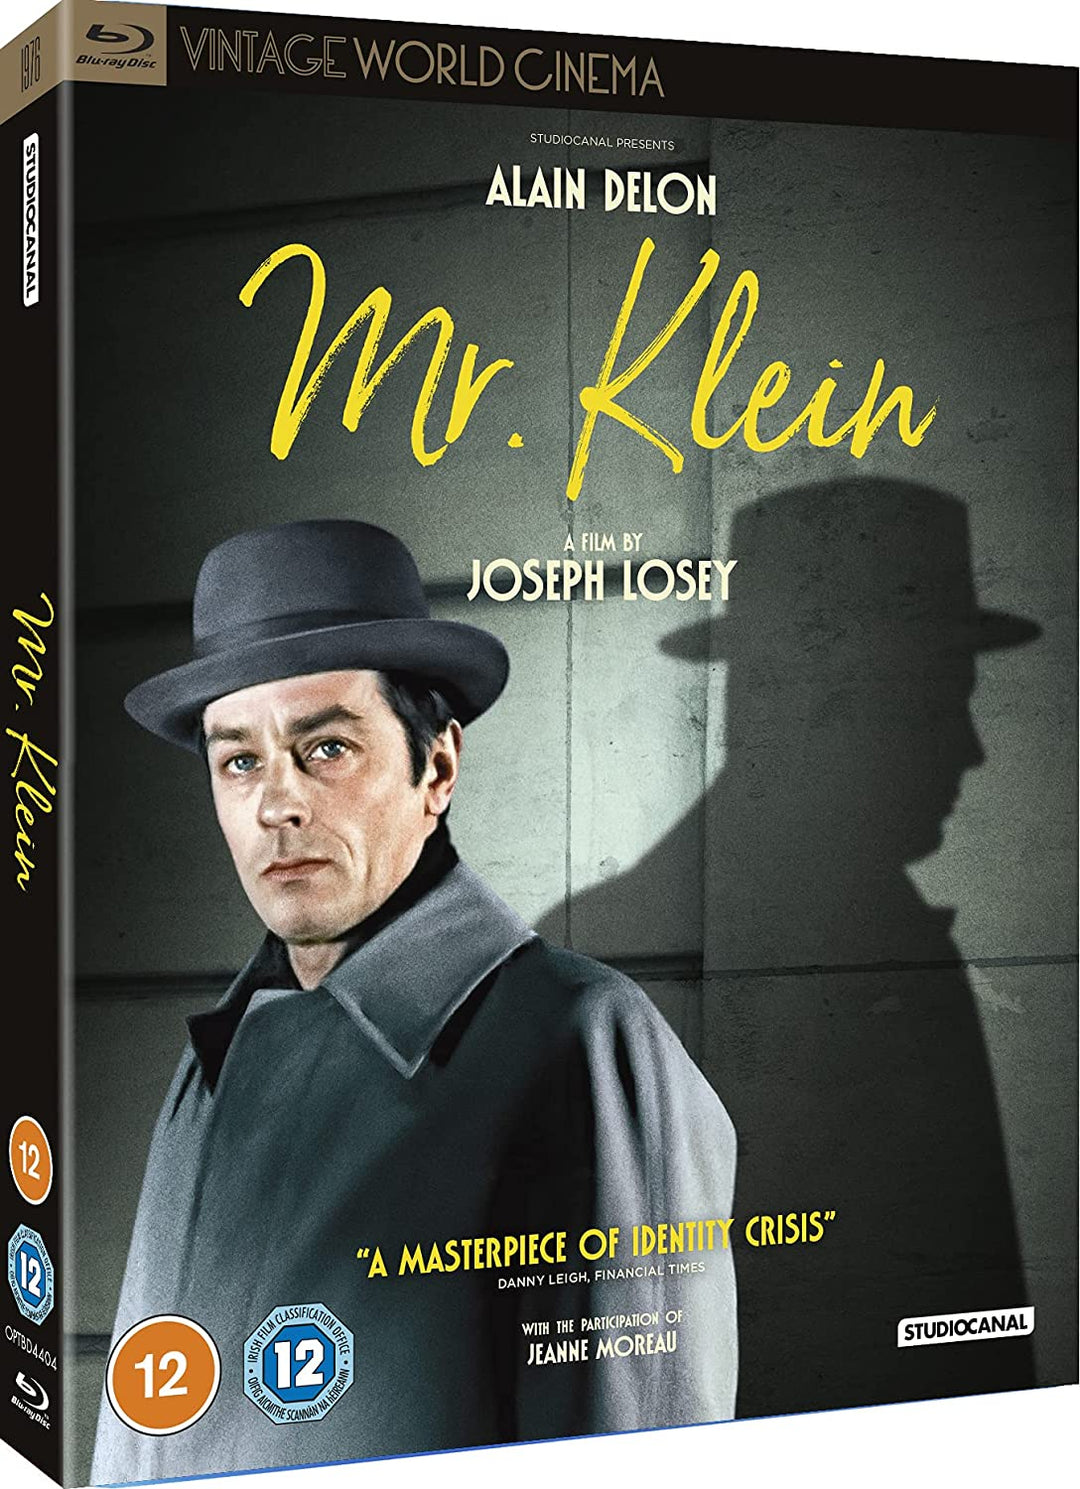 Mr. Klein (Vintage World Cinema) - War/Drama [Blu-ray]